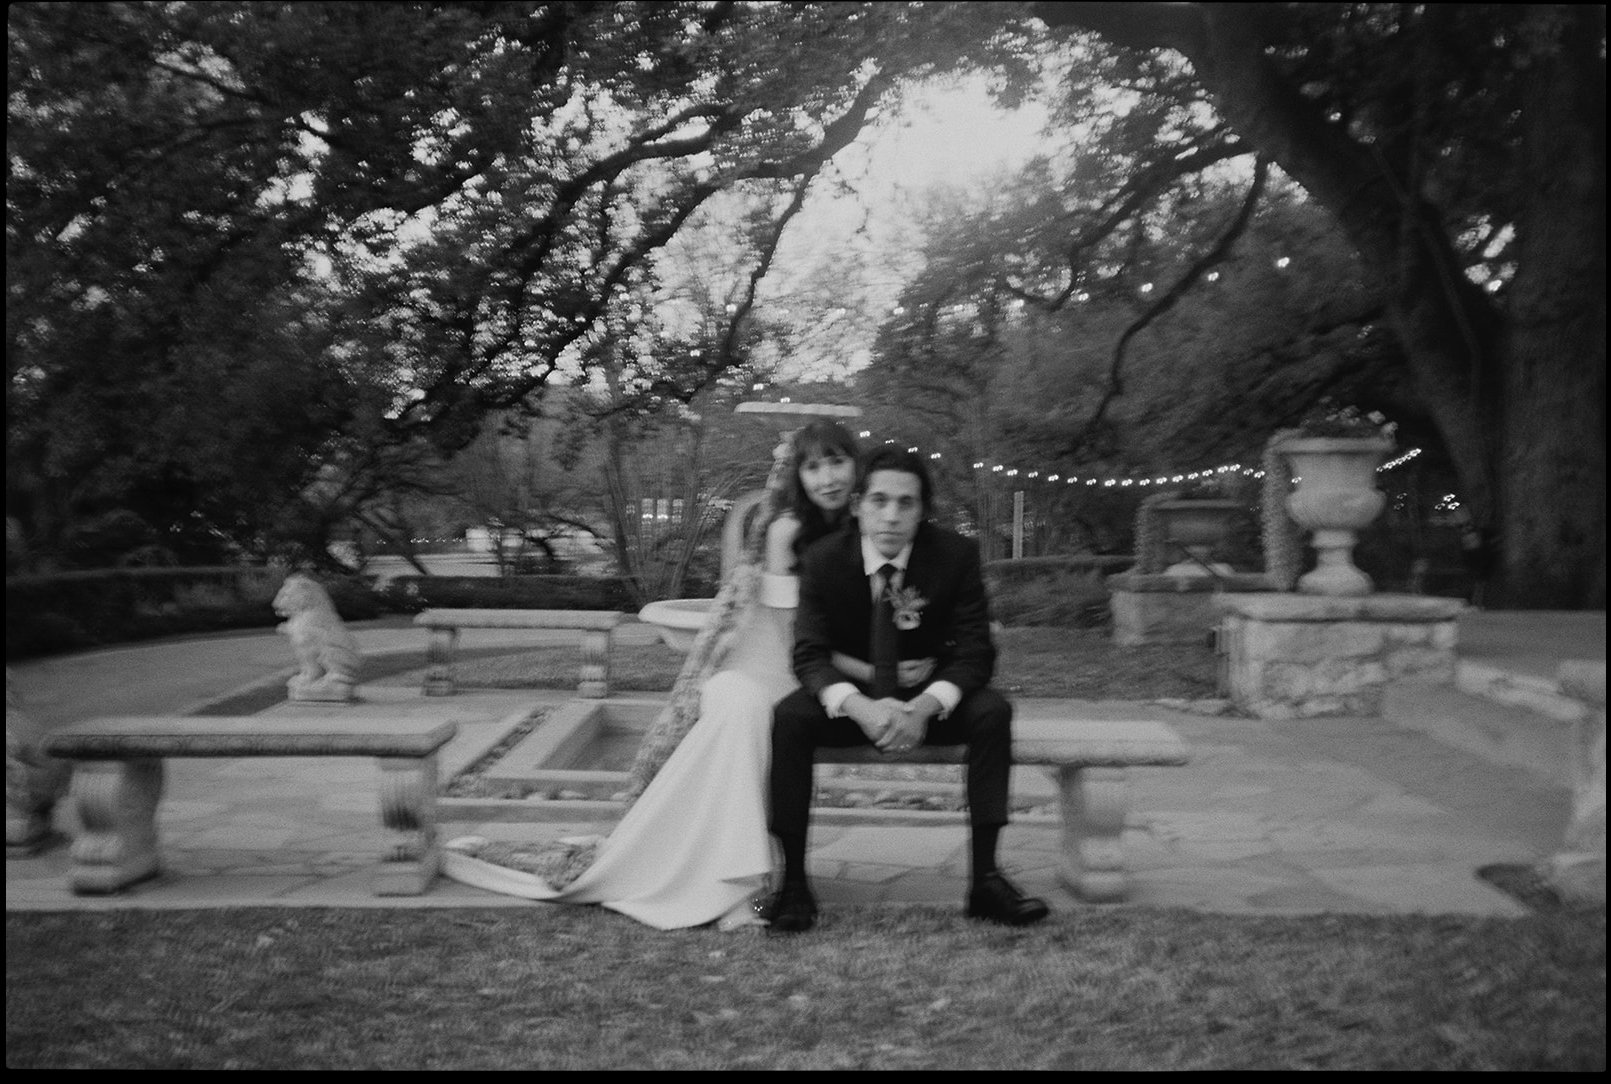 Best-Austin-Wedding-Photographers-Elopement-Film-35mm-Asheville-Santa-Barbara-Laguna-Gloria-70.jpg